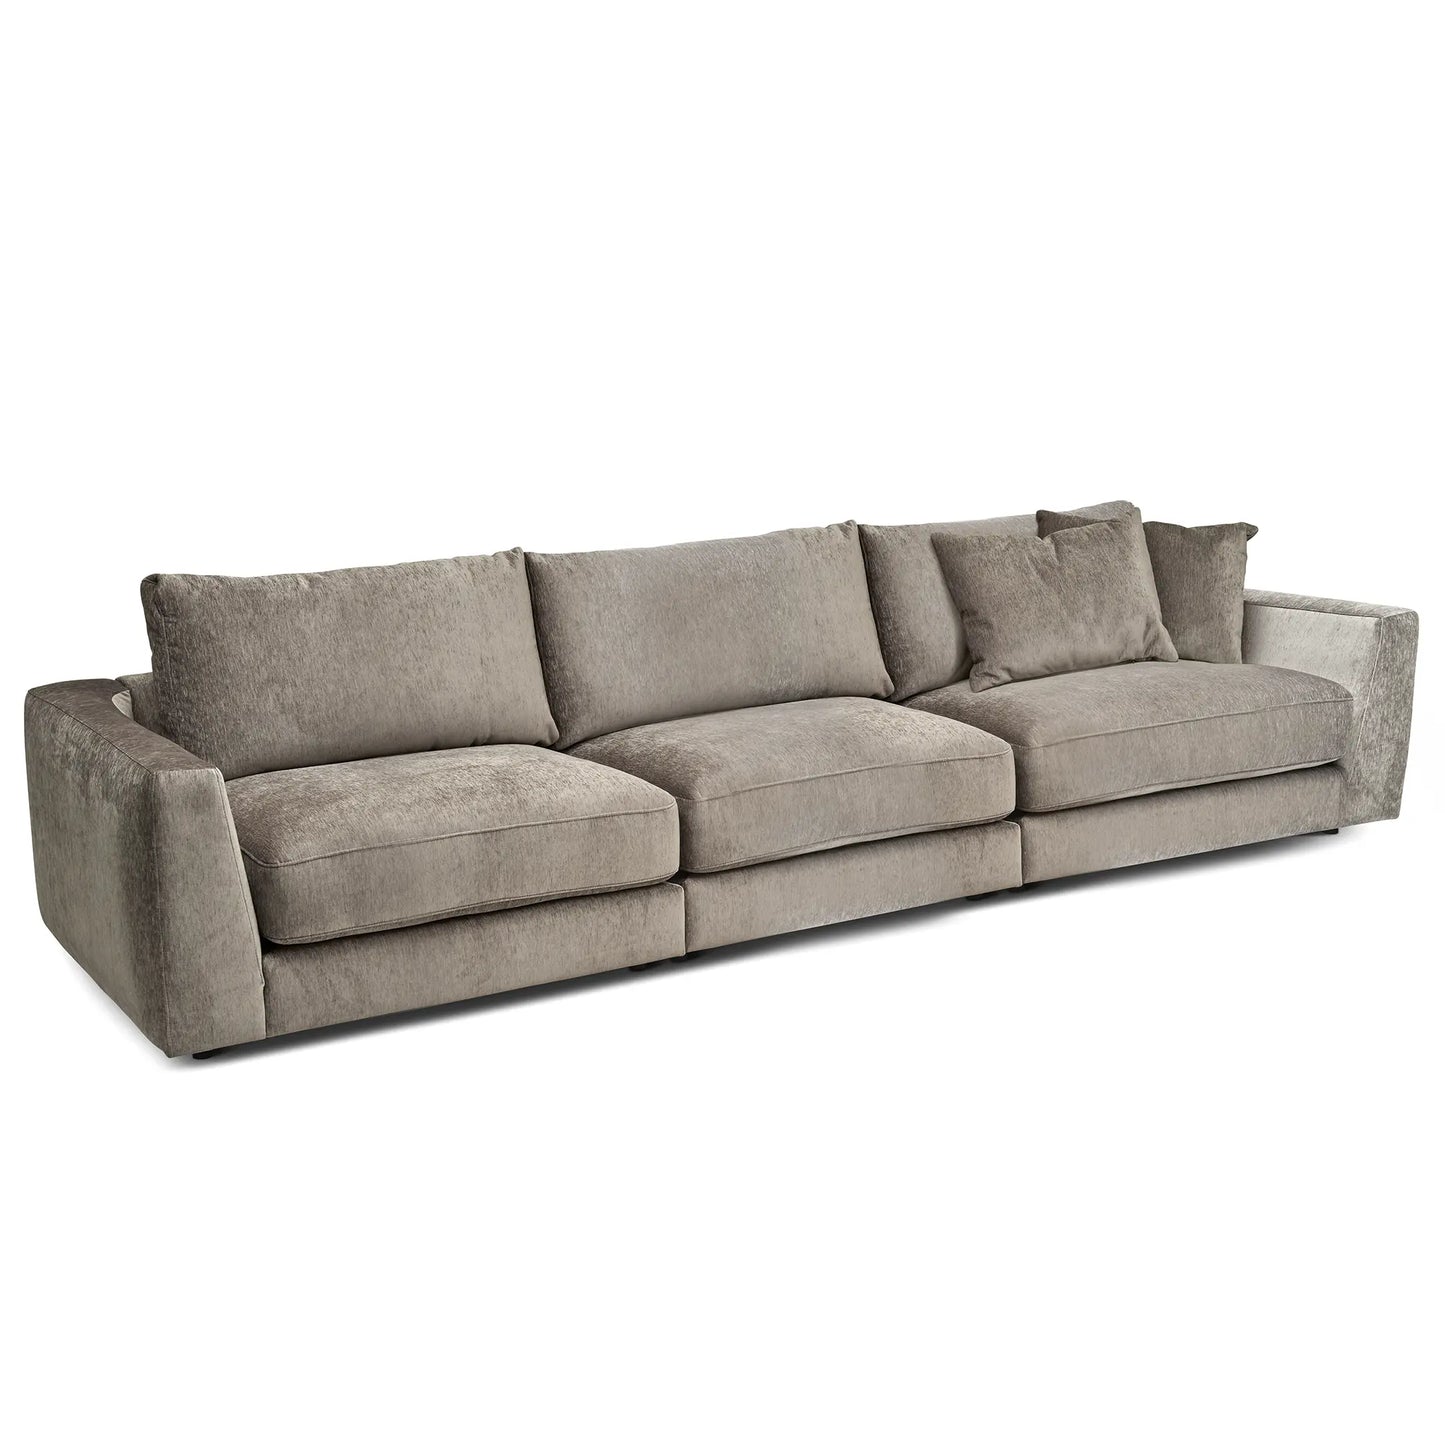 En stor 5-sits soffa i khakibrun färg som kan byggas ut till större eller mindre soffa